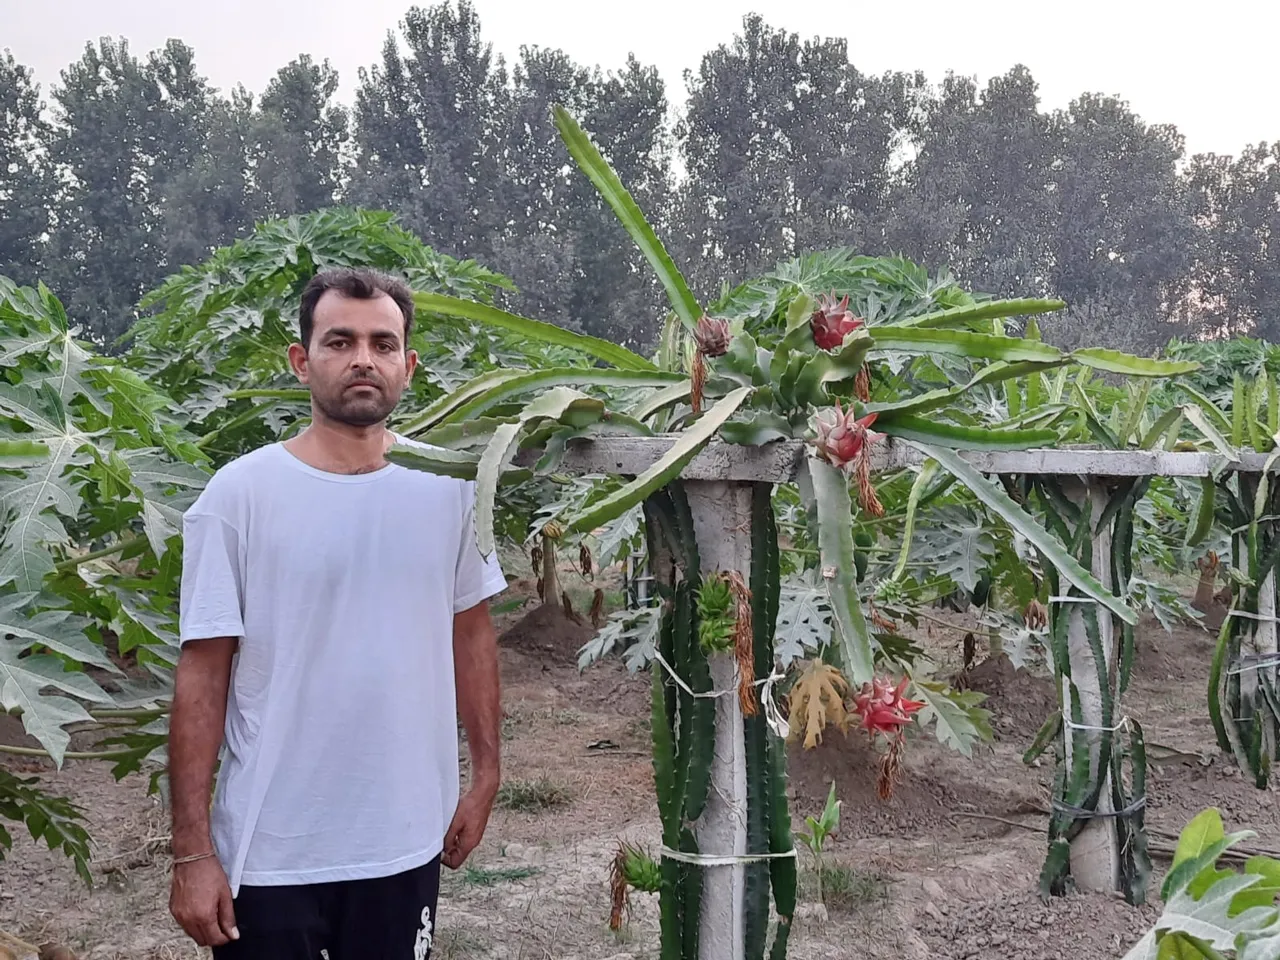 Raman Salaria at his farm in Pathankot, Punjab. Pic: Courtesy of Raman Salaria